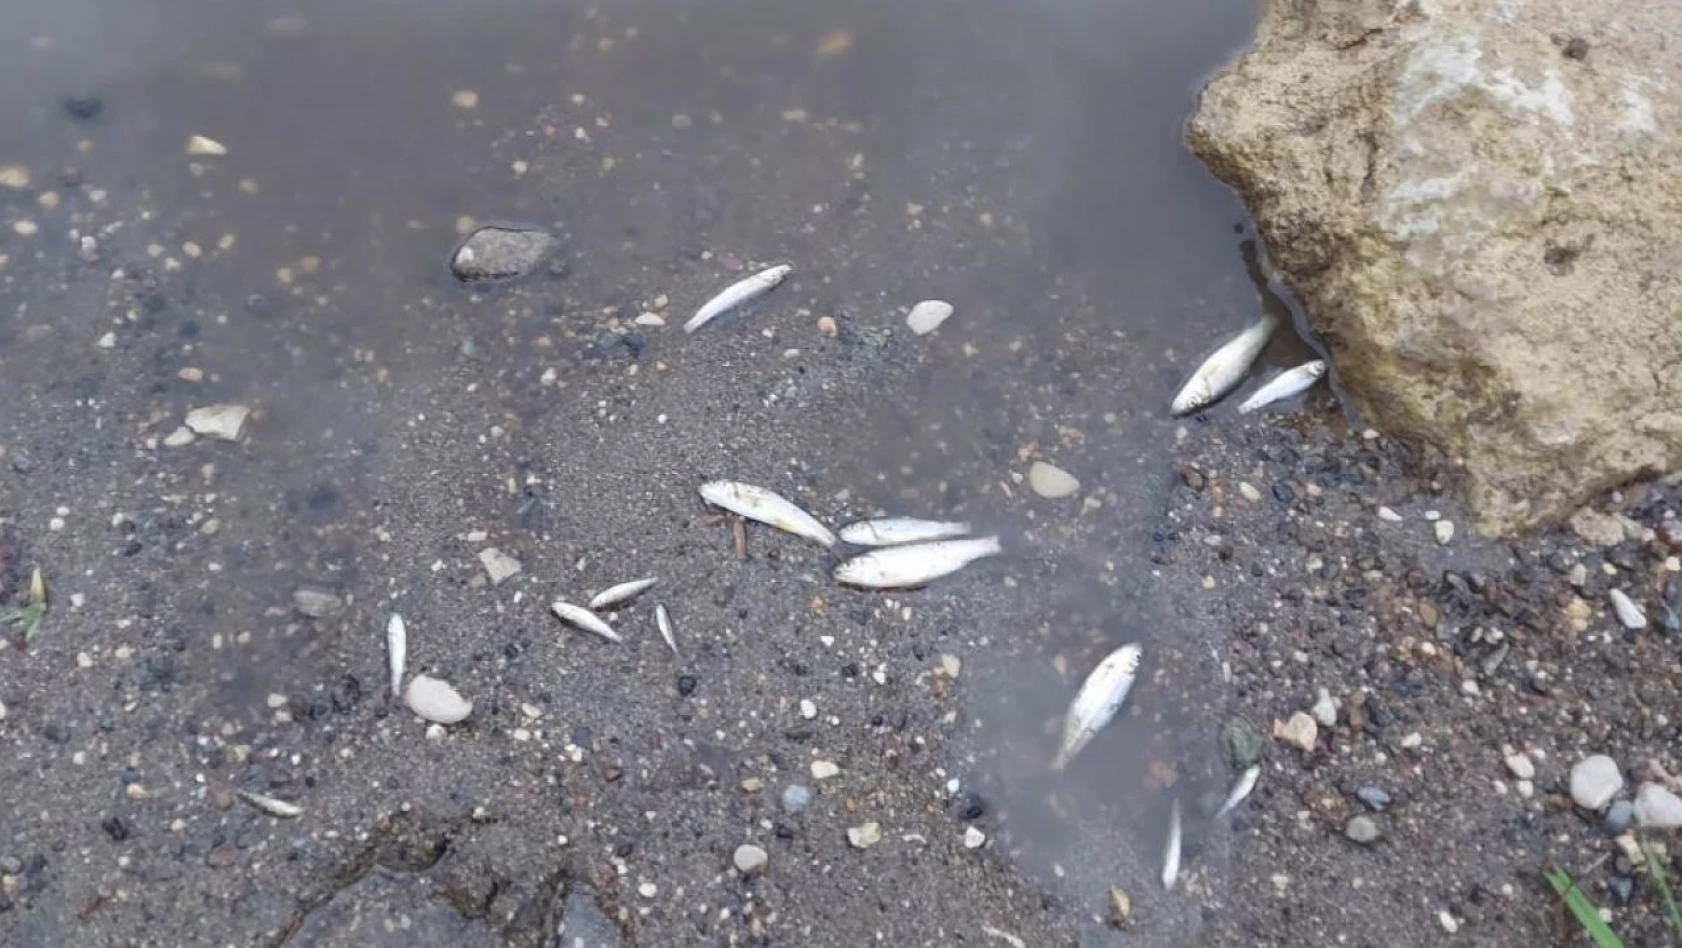 Zamantı Irmağı'nda balıkların ölüm sebebi belli oldu